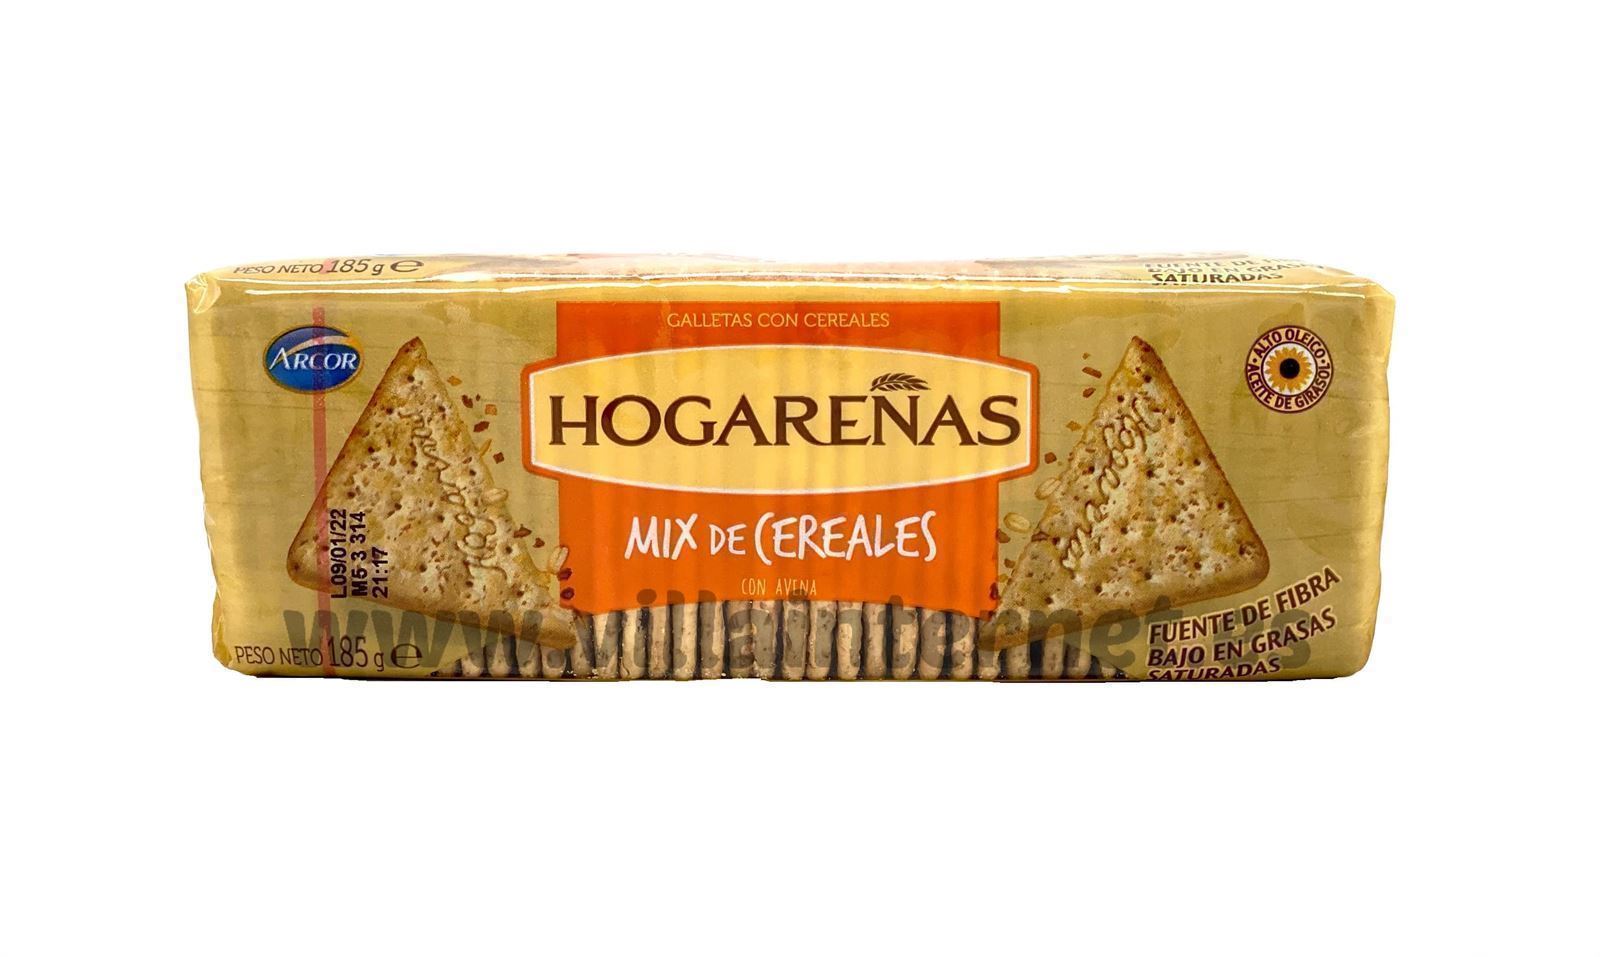 Galletas mix de cereales Hogareñas 185g - Imagen 1